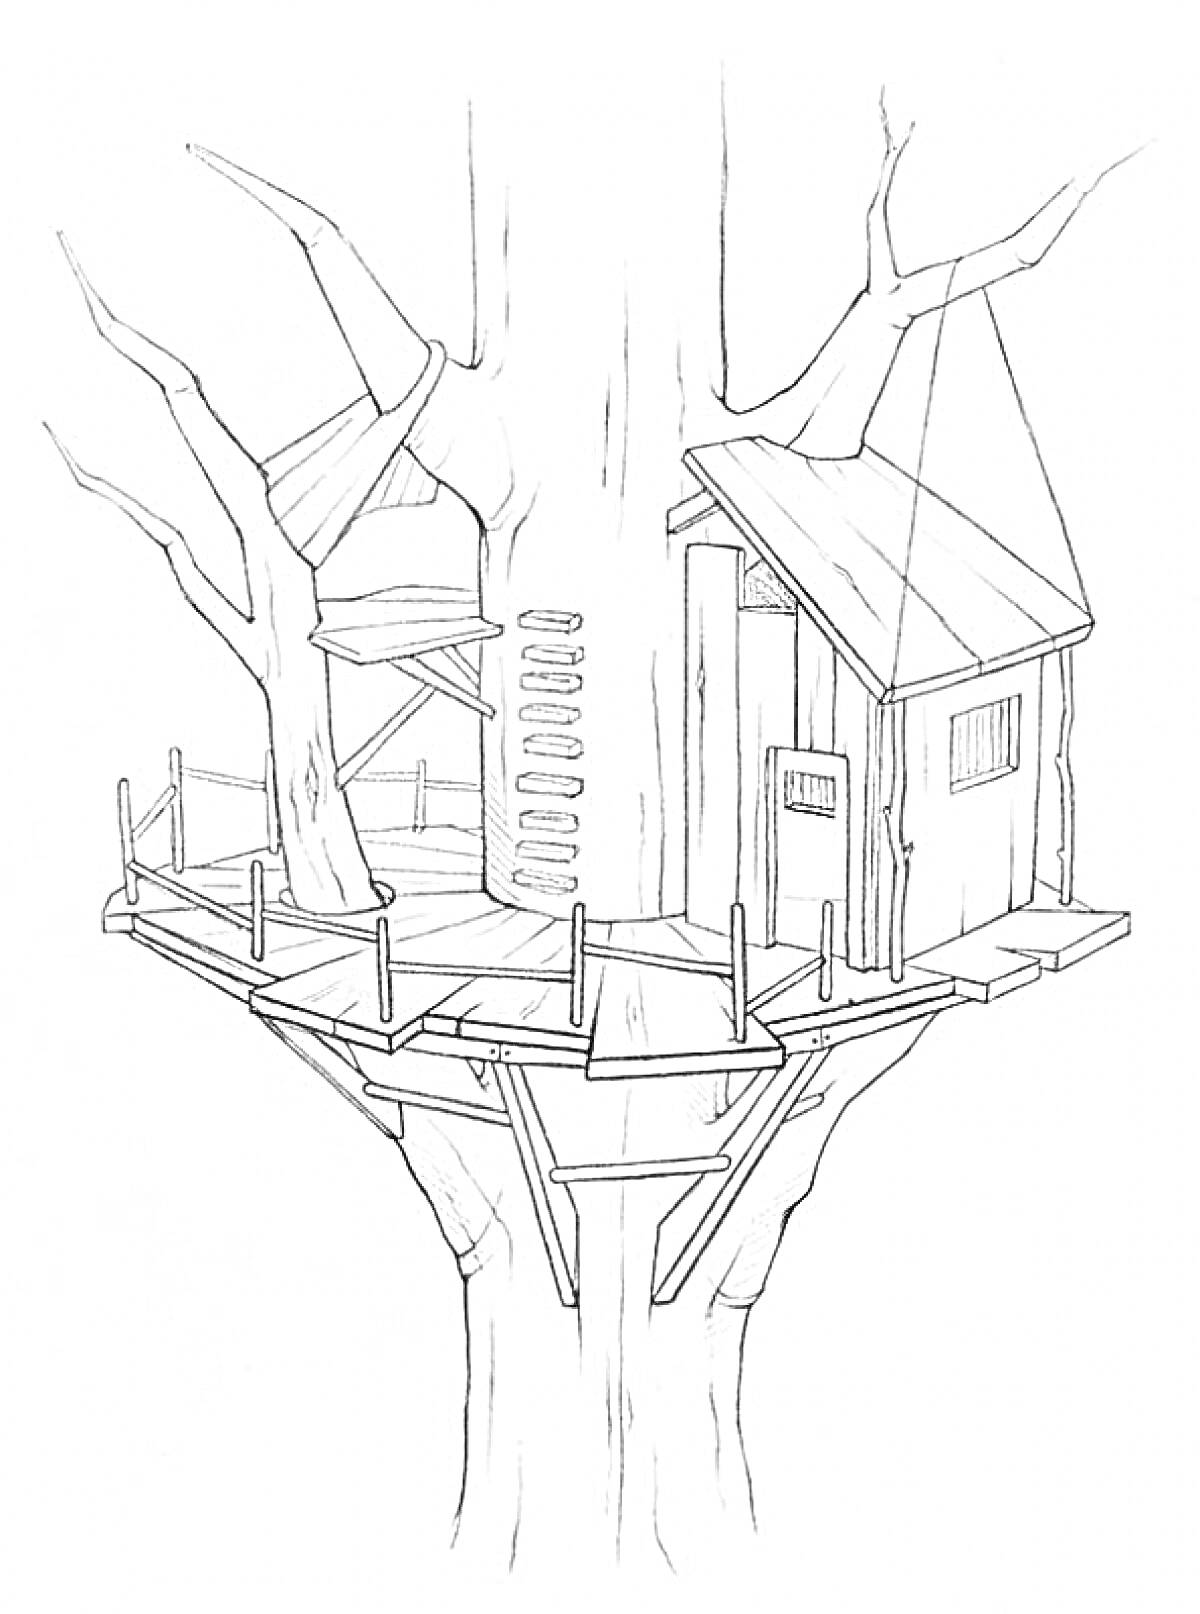 Домик на дереве с лестницей, площадкой и домиком